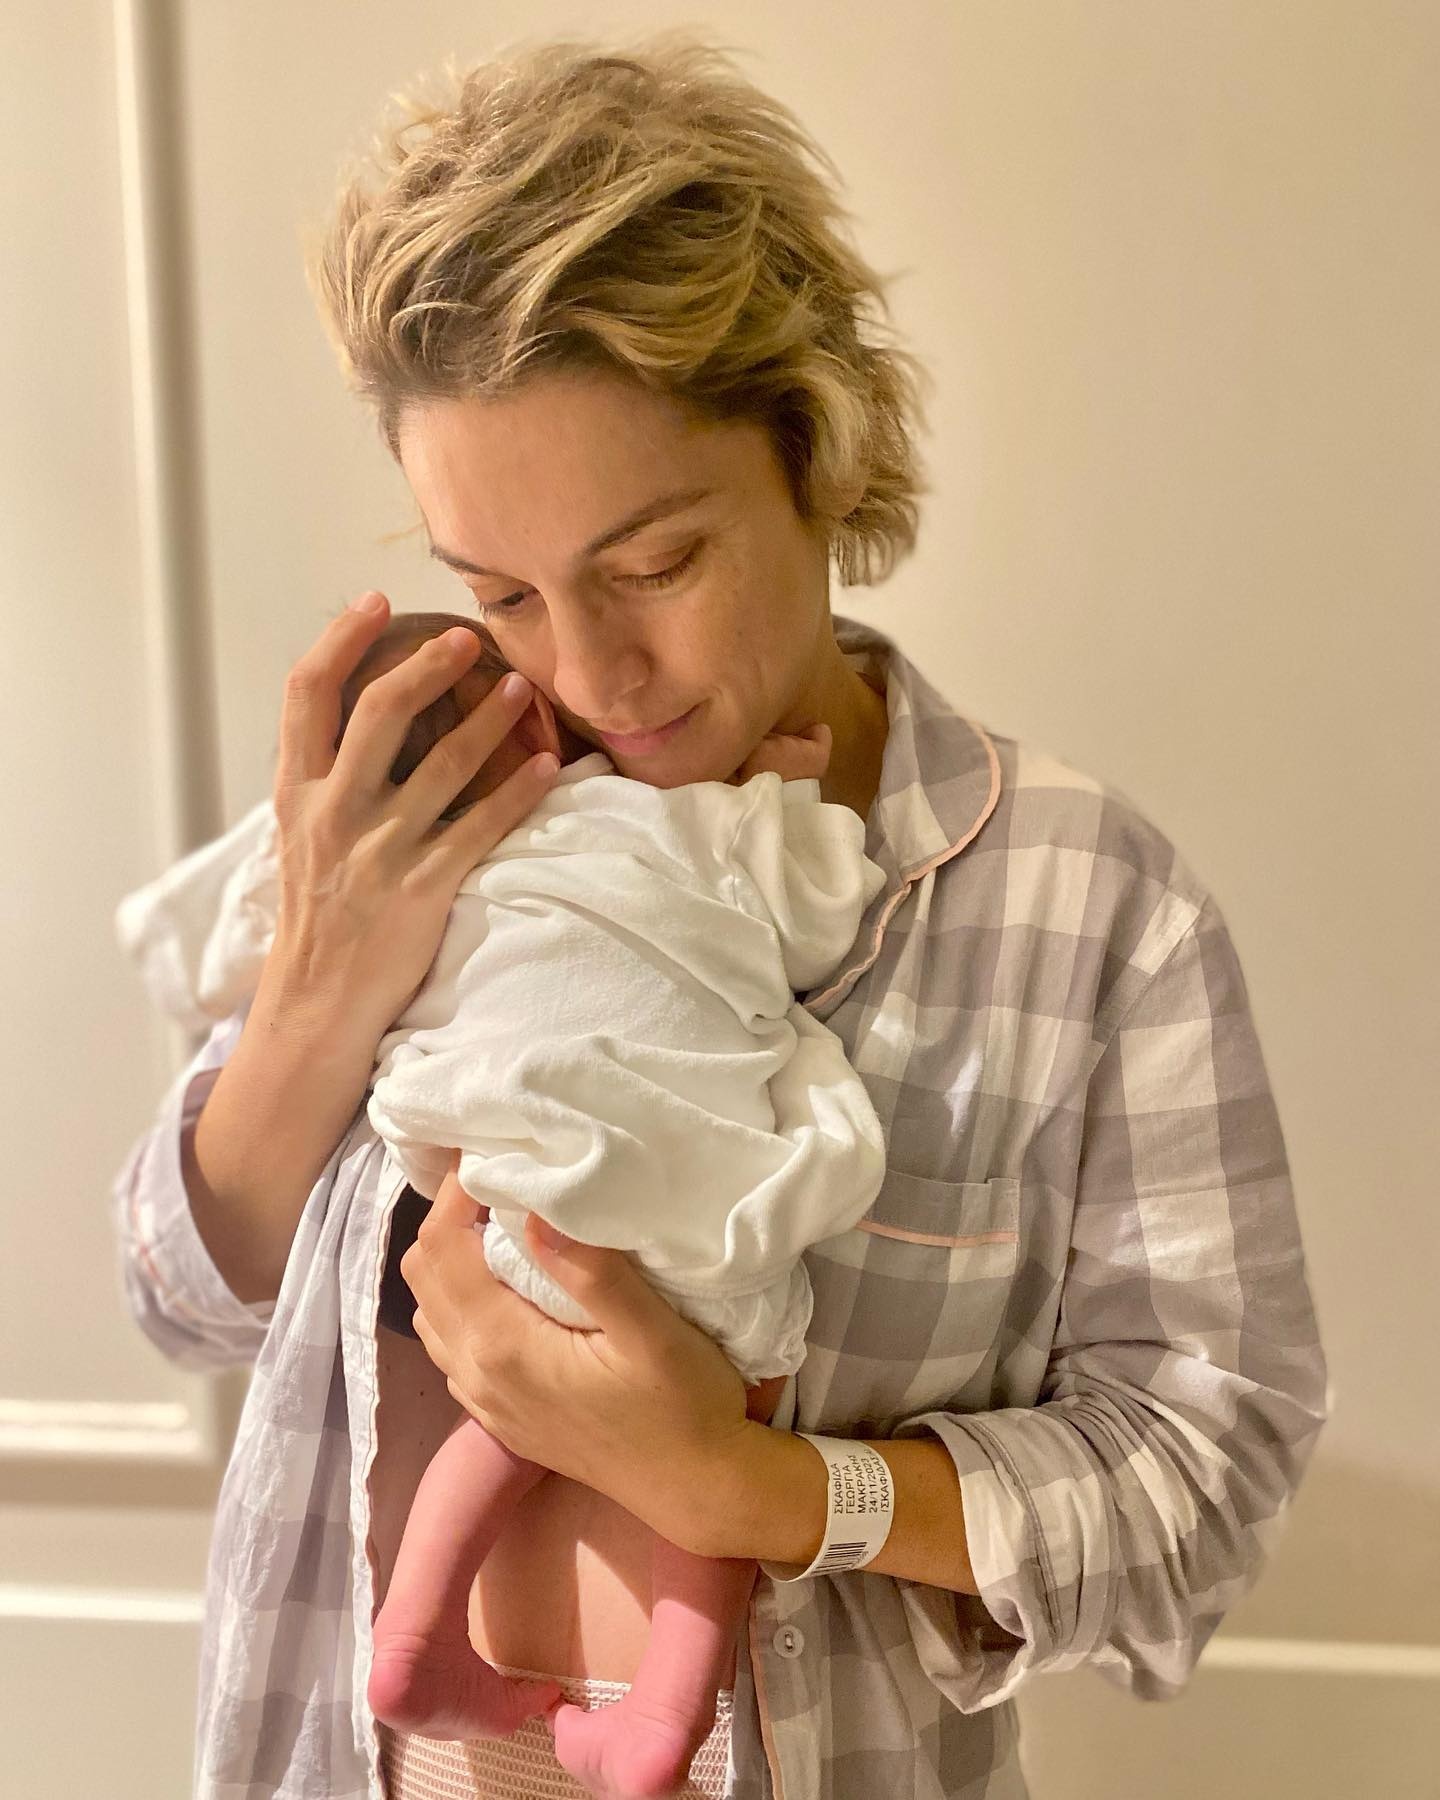 Γιούλικα Σκαφιδά: Οι πρώτες φωτογραφίες αγκαλιά με τον γιο της (εικόνες)